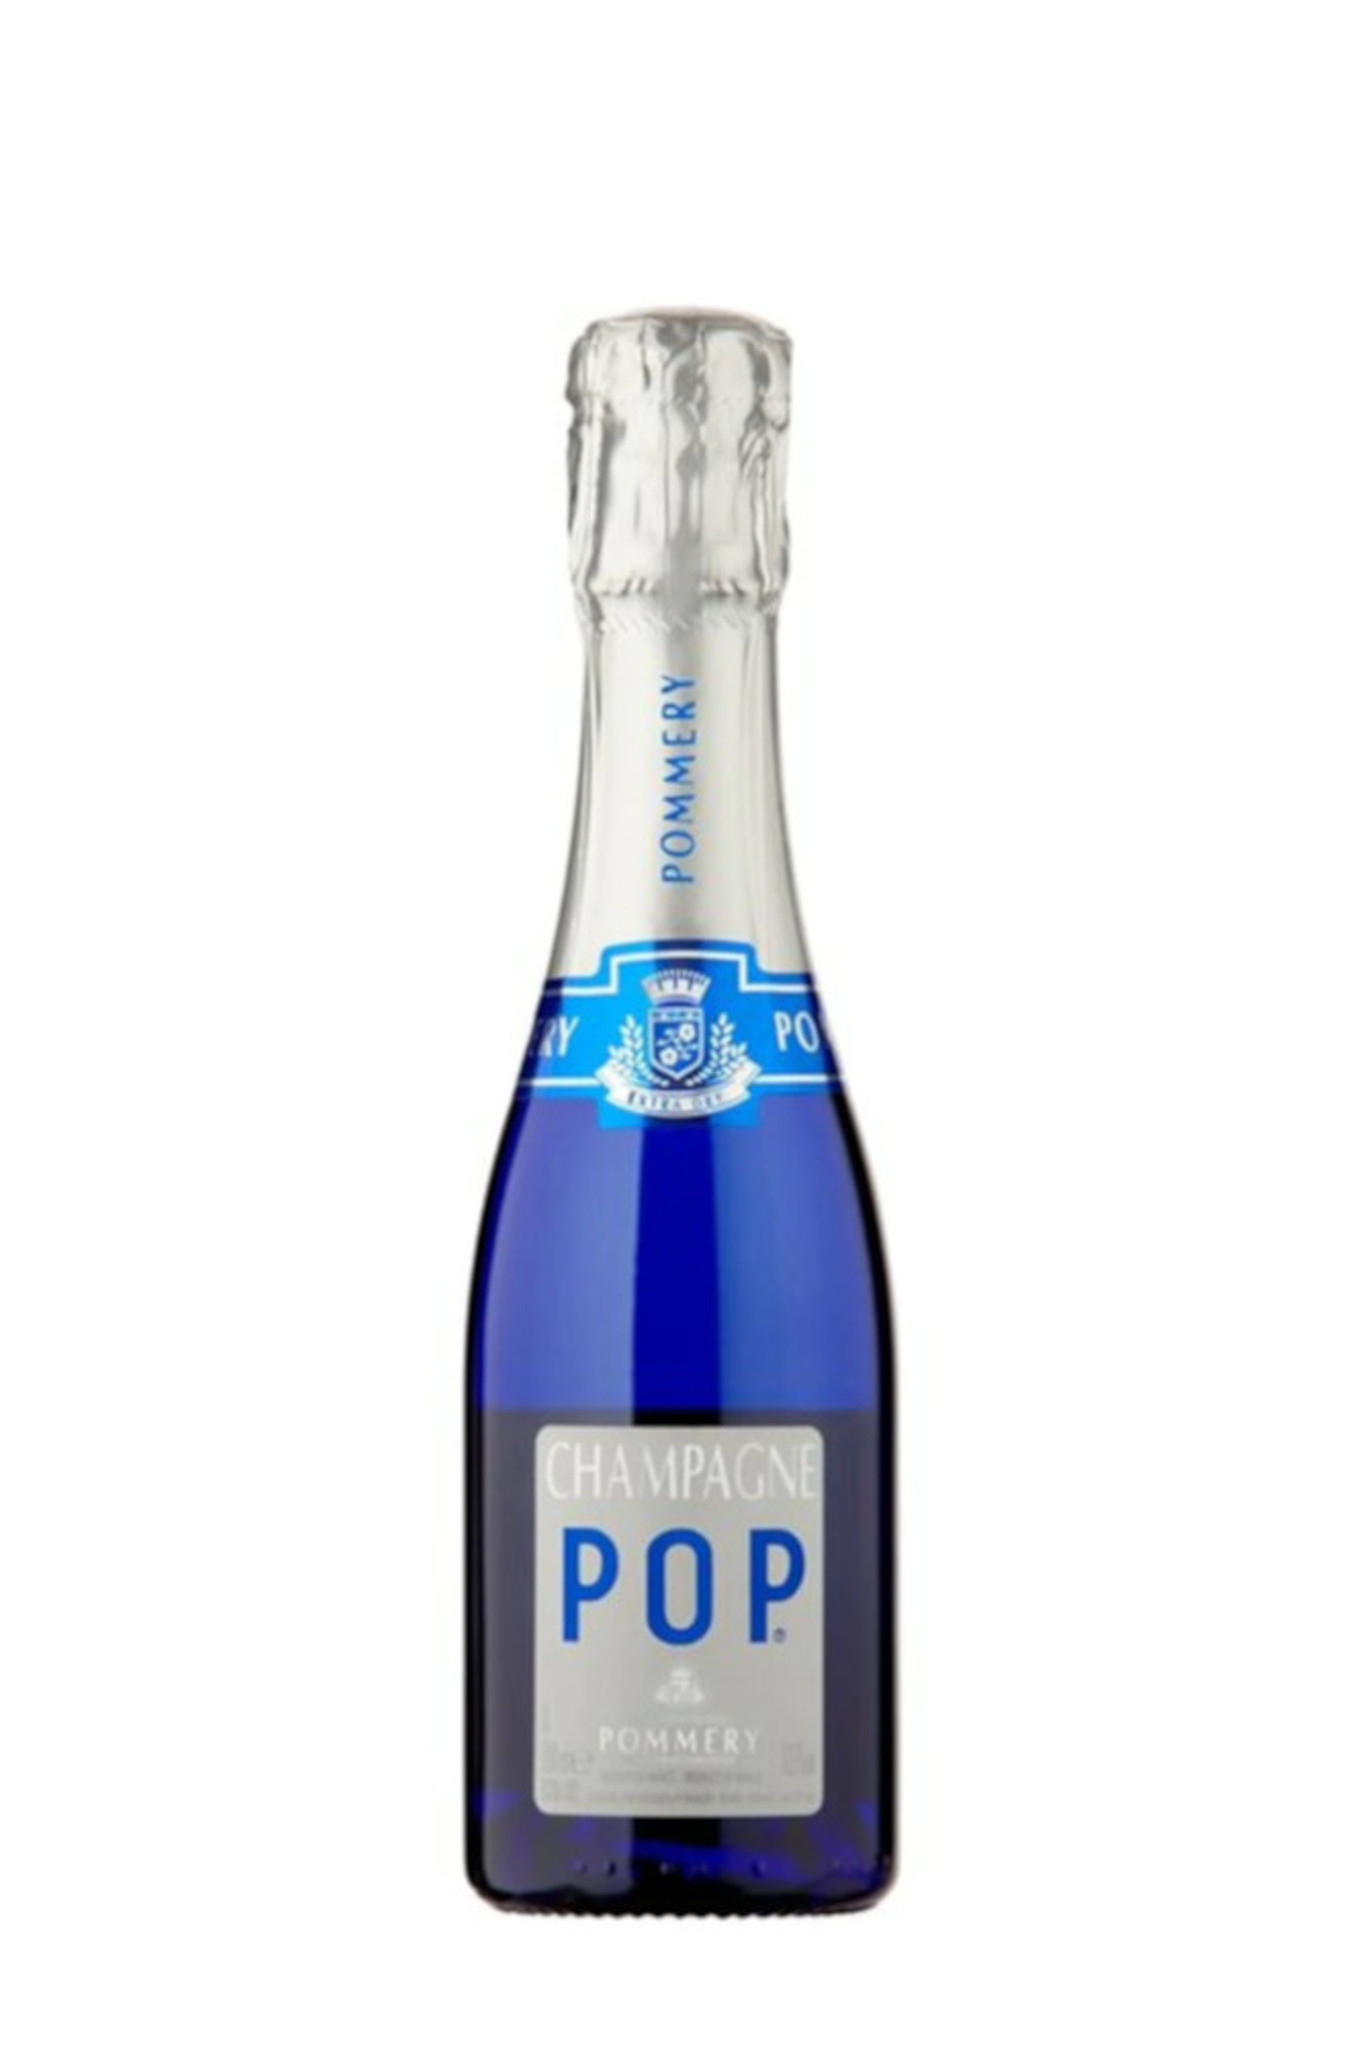 ekstensivt opadgående sorg Pommery POP Extra Dry (187ml Mini/Split Bottle) - Premier Champagne